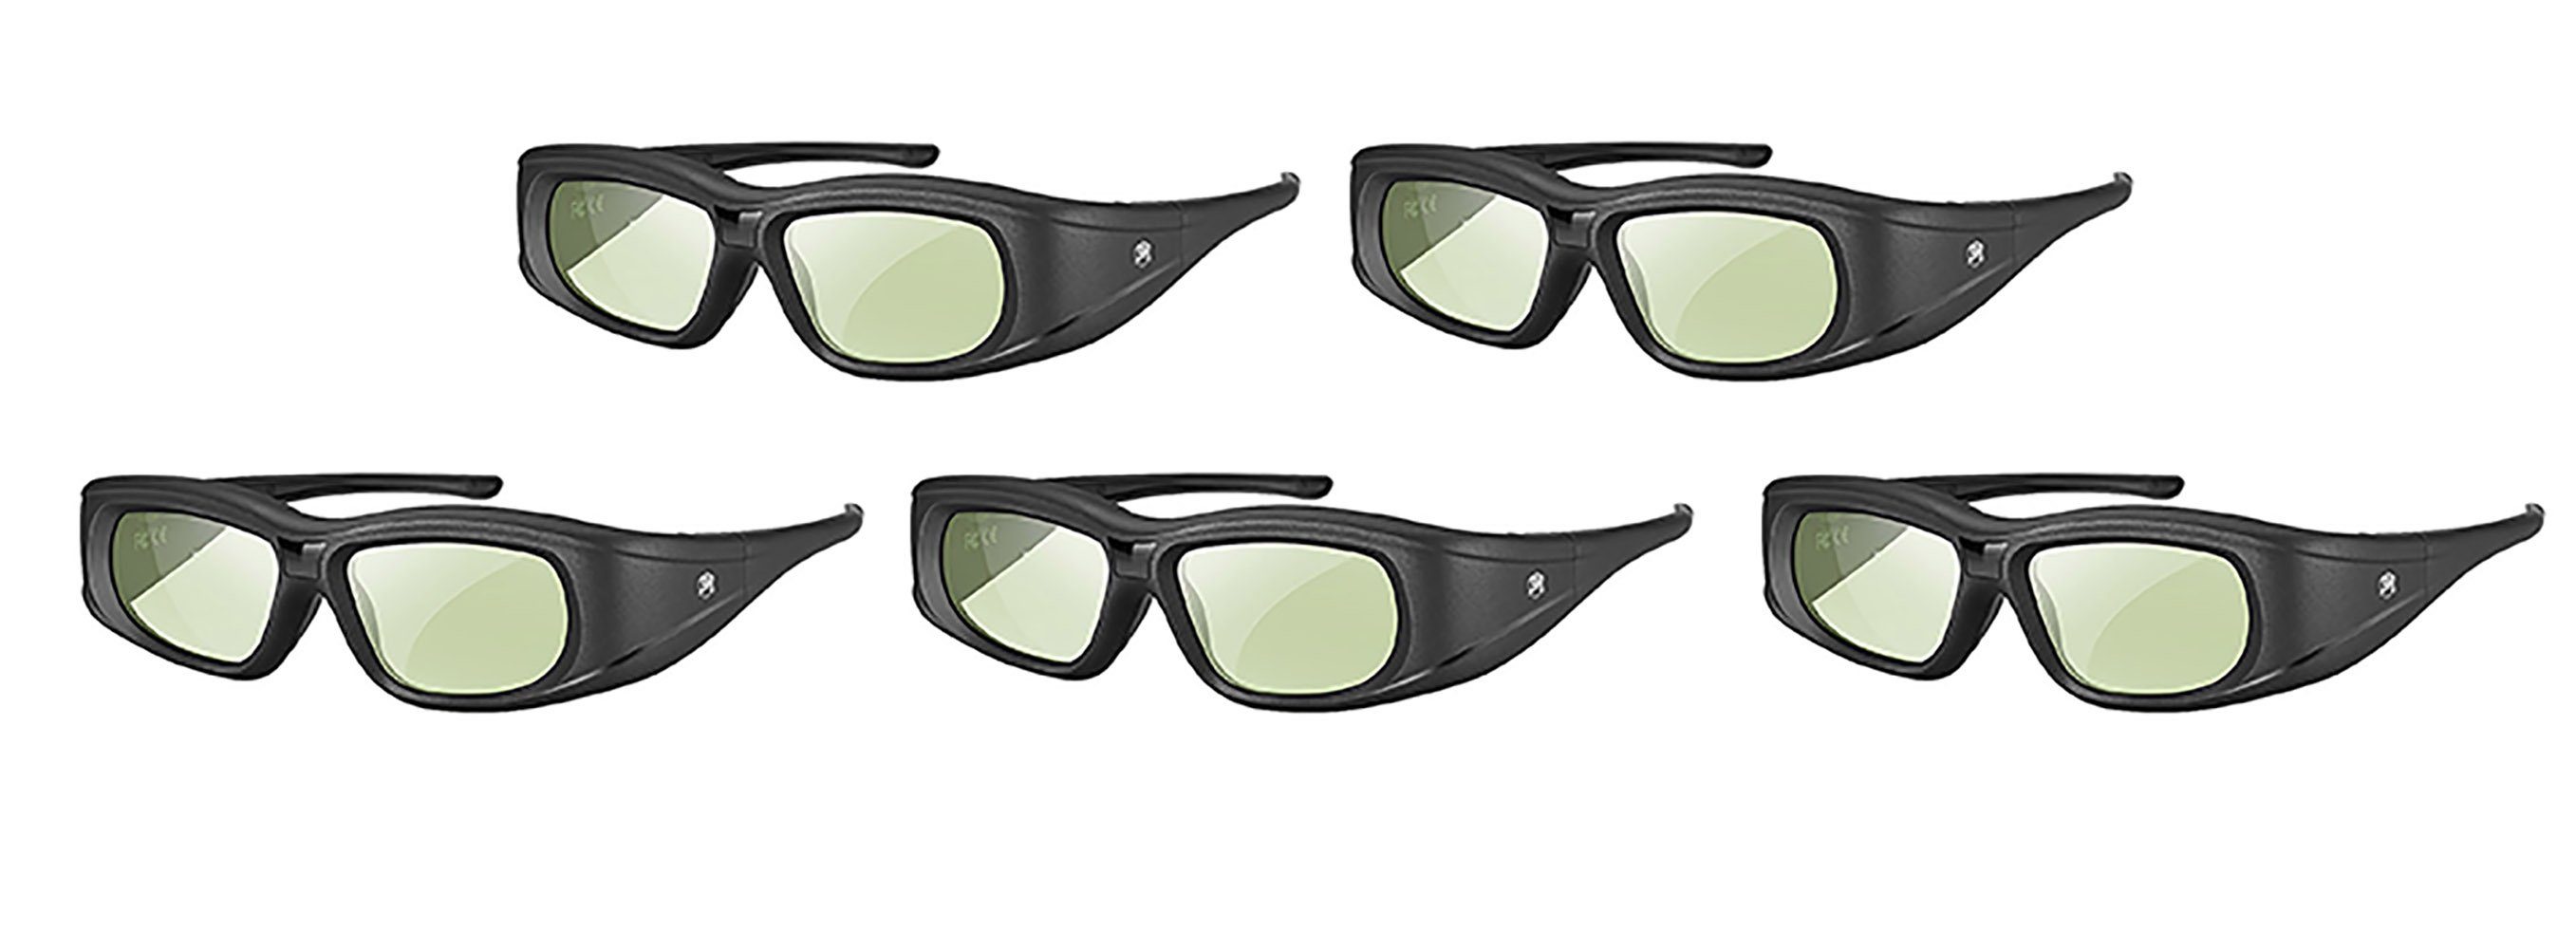 TPFNet 3D-Brille »Aktive Shutterbrille für Bluetooth / RF 3D TVs«, Samsung,  Panasonic, Epson, etc. - wiederaufladbar - Schwarz - 5 Stück